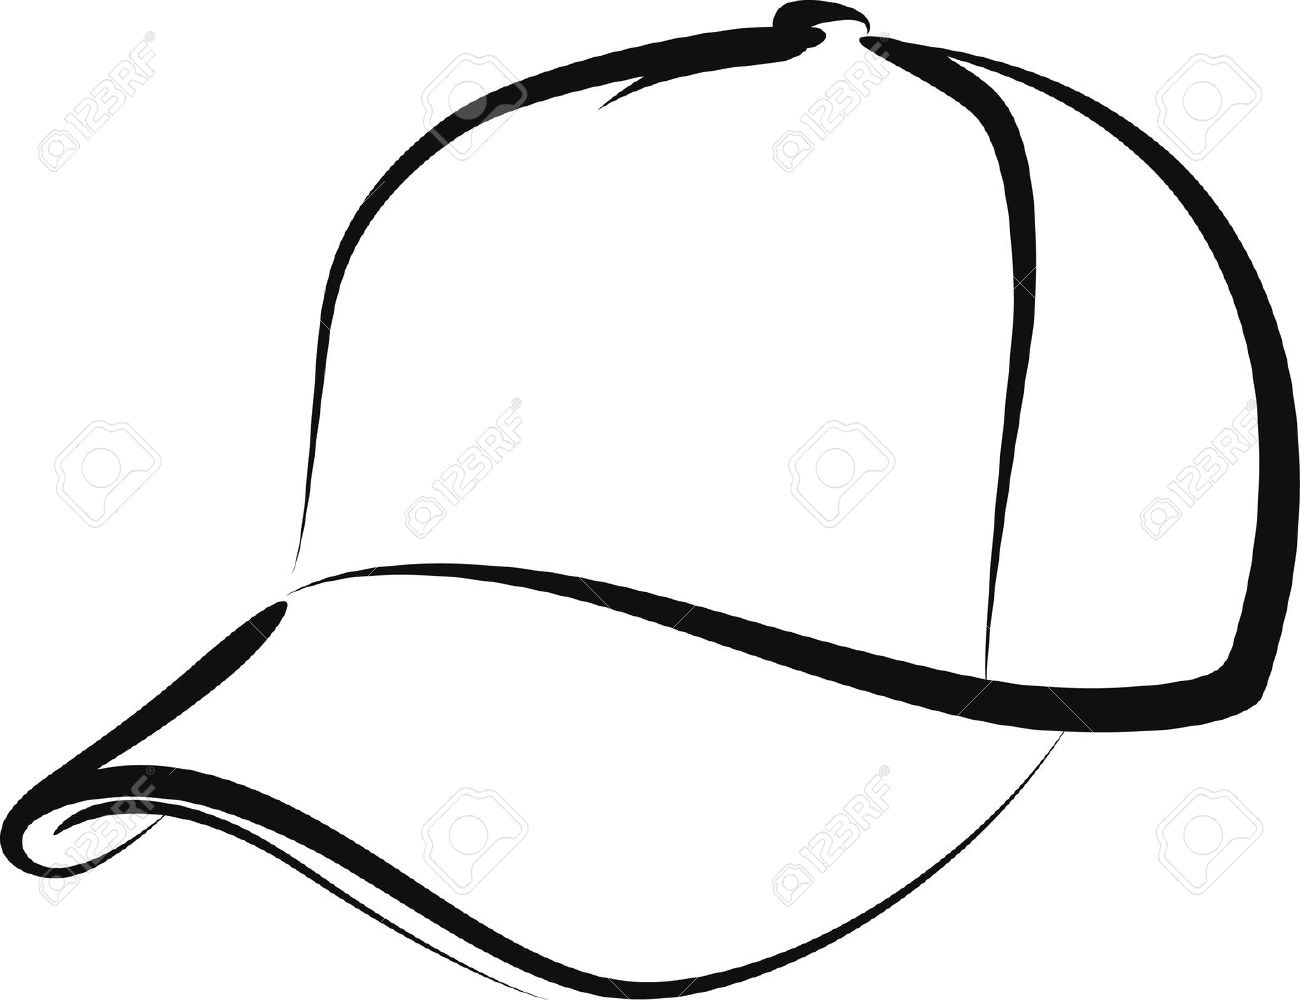 Cap clipart baseball cap. Free download clip art